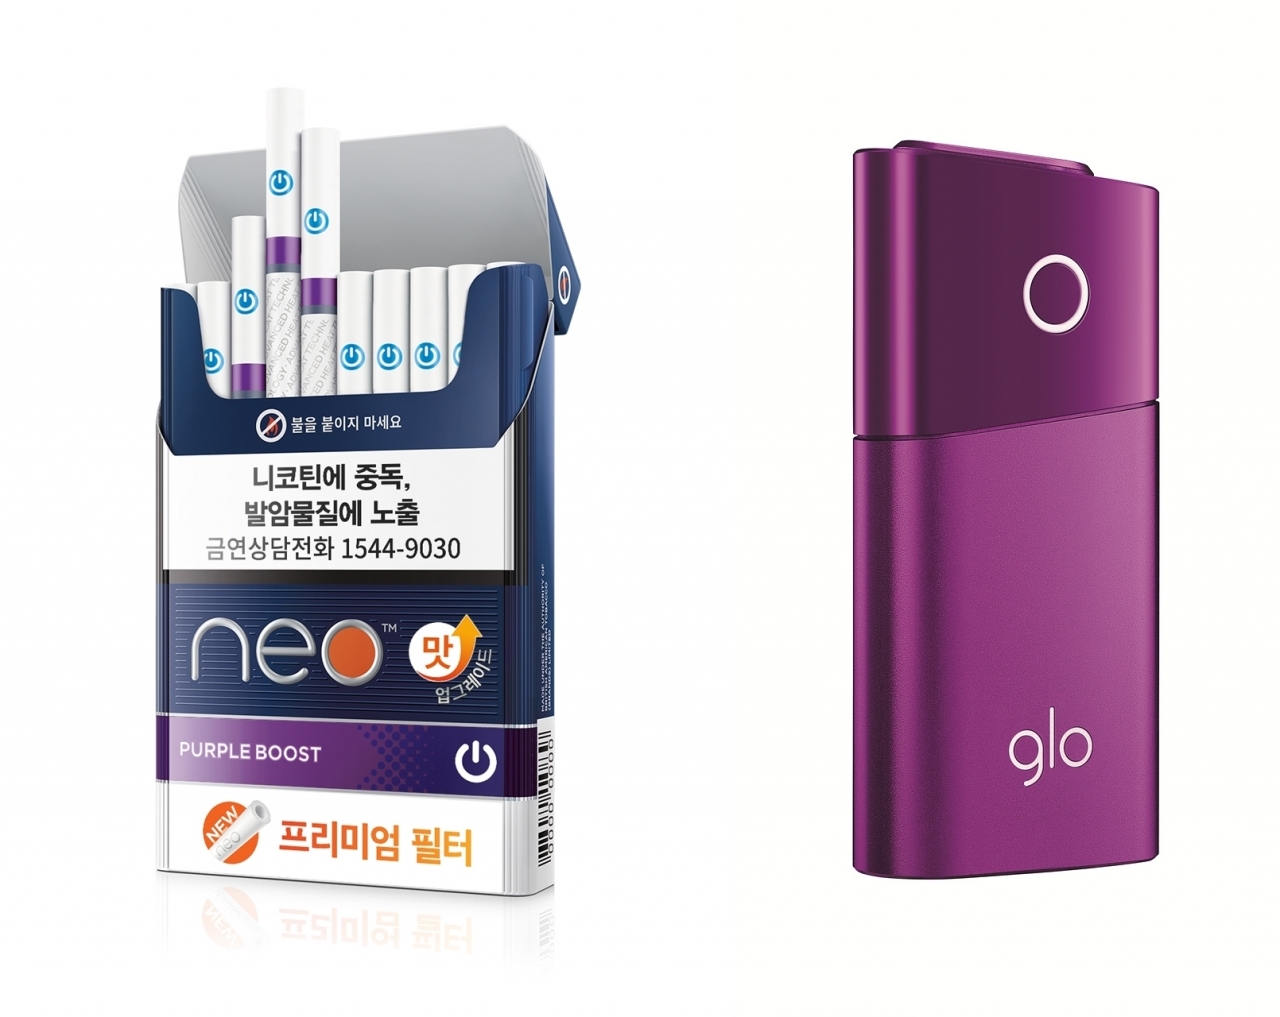 브리티쉬 아메리칸 토바코 코리아(이하 BAT코리아, 대표 매튜 쥬에리)가 궐련형 전자담배기기 ‘글로(glo™)’ 전용스틱, ‘네오(Neo)’ 8종 제품군을 업그레이드해 판매 개시한다.